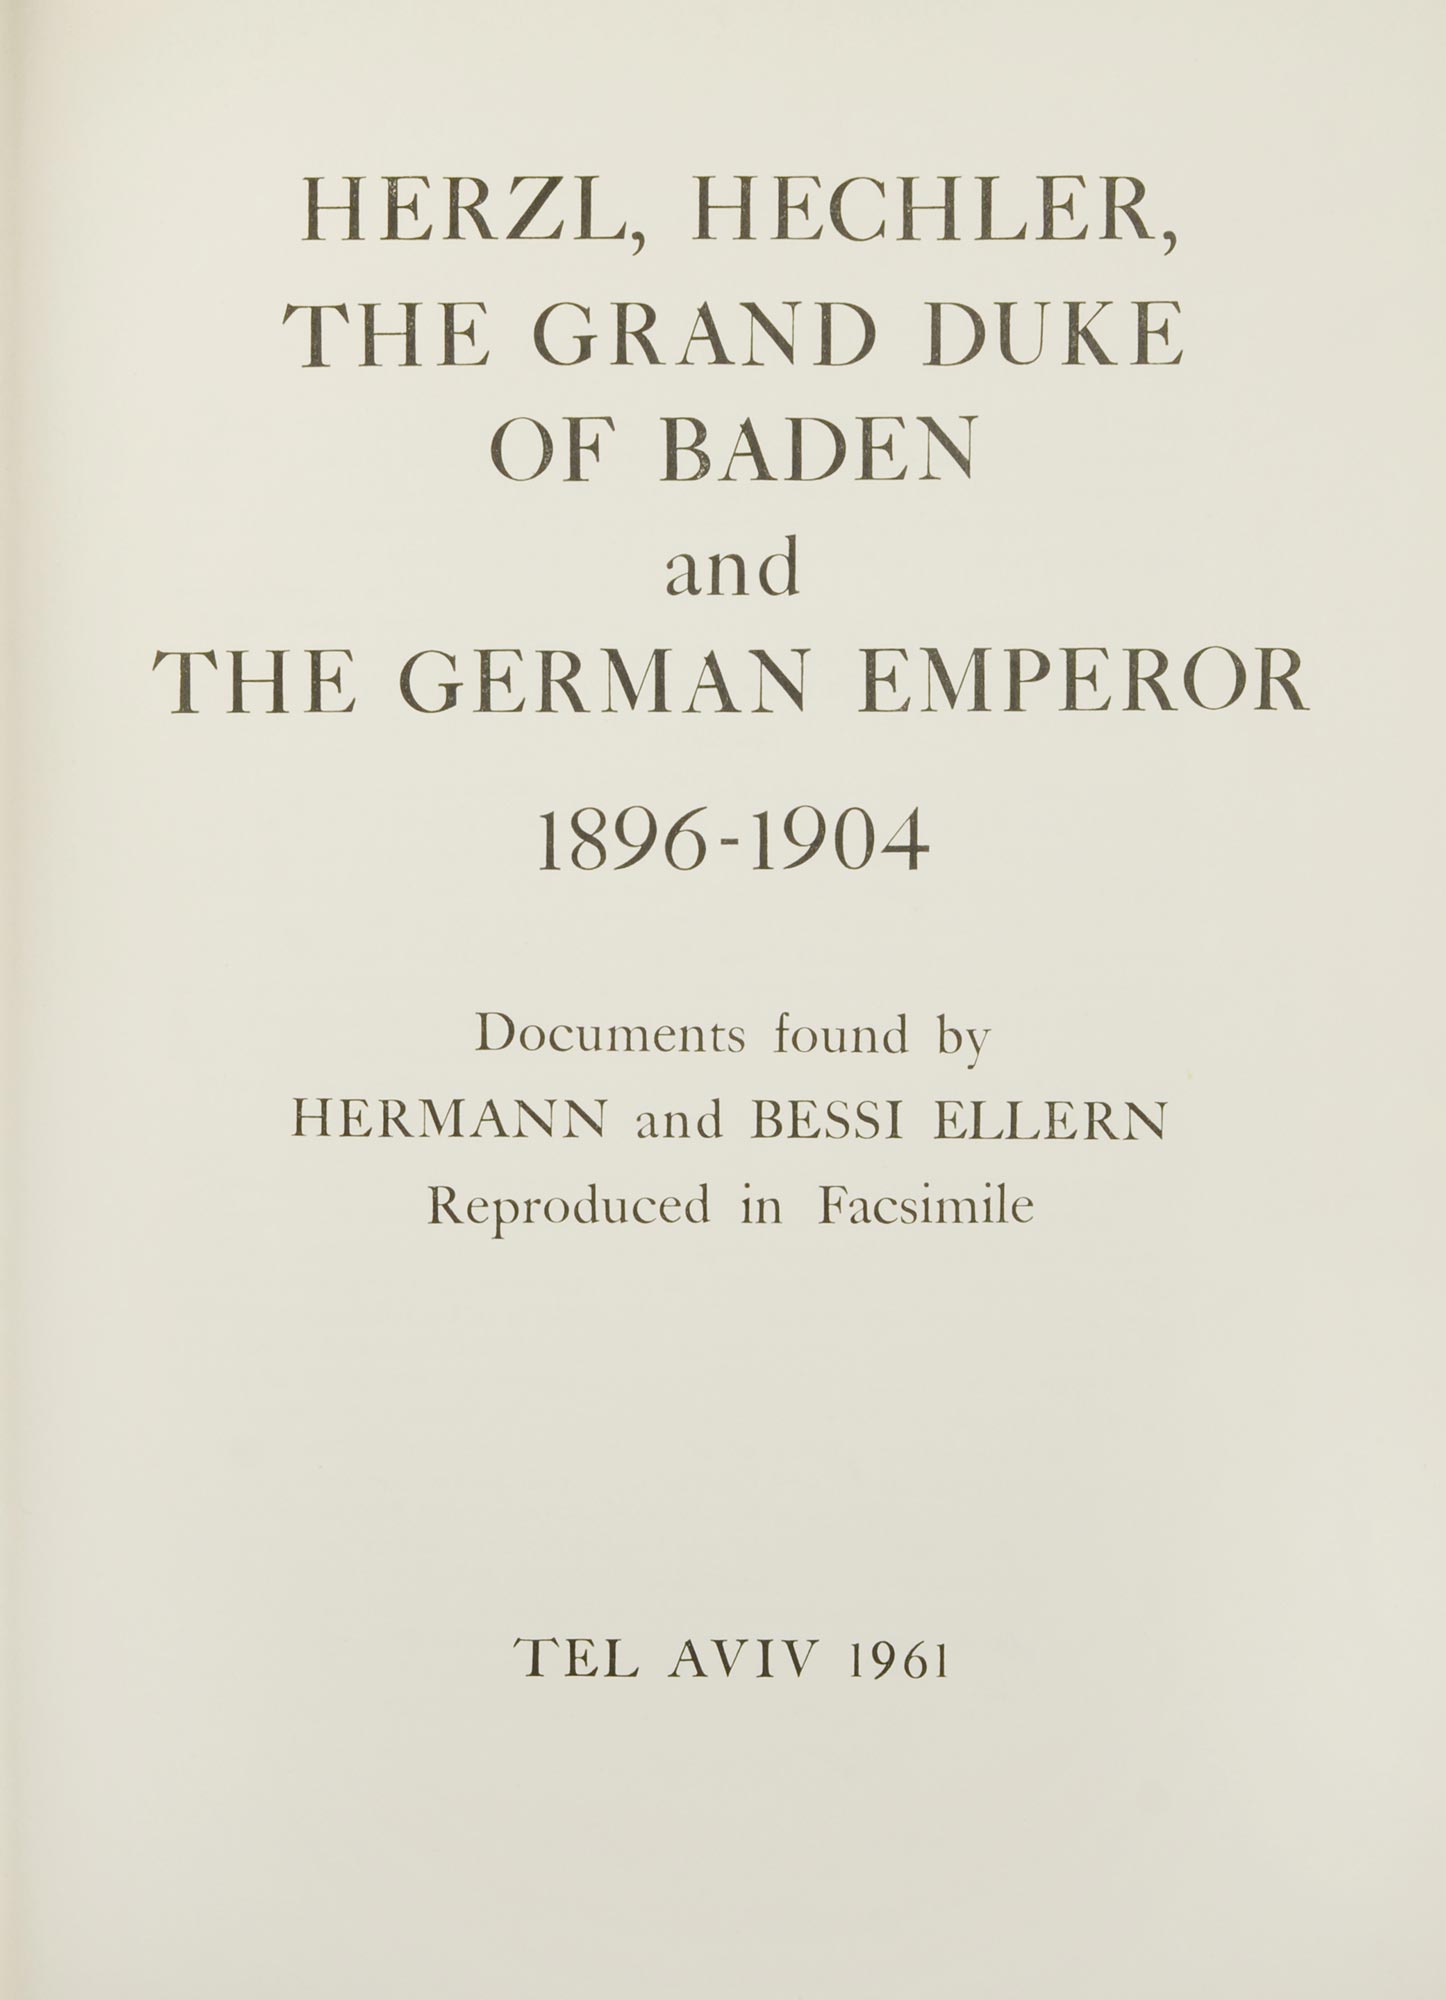 HERZL, HECHLER, THE GRAND DUKE OF BADEN AND THE GERMAN EMPEROR 1896-1904  Tel Aviv, 1961. - Image 2 of 2